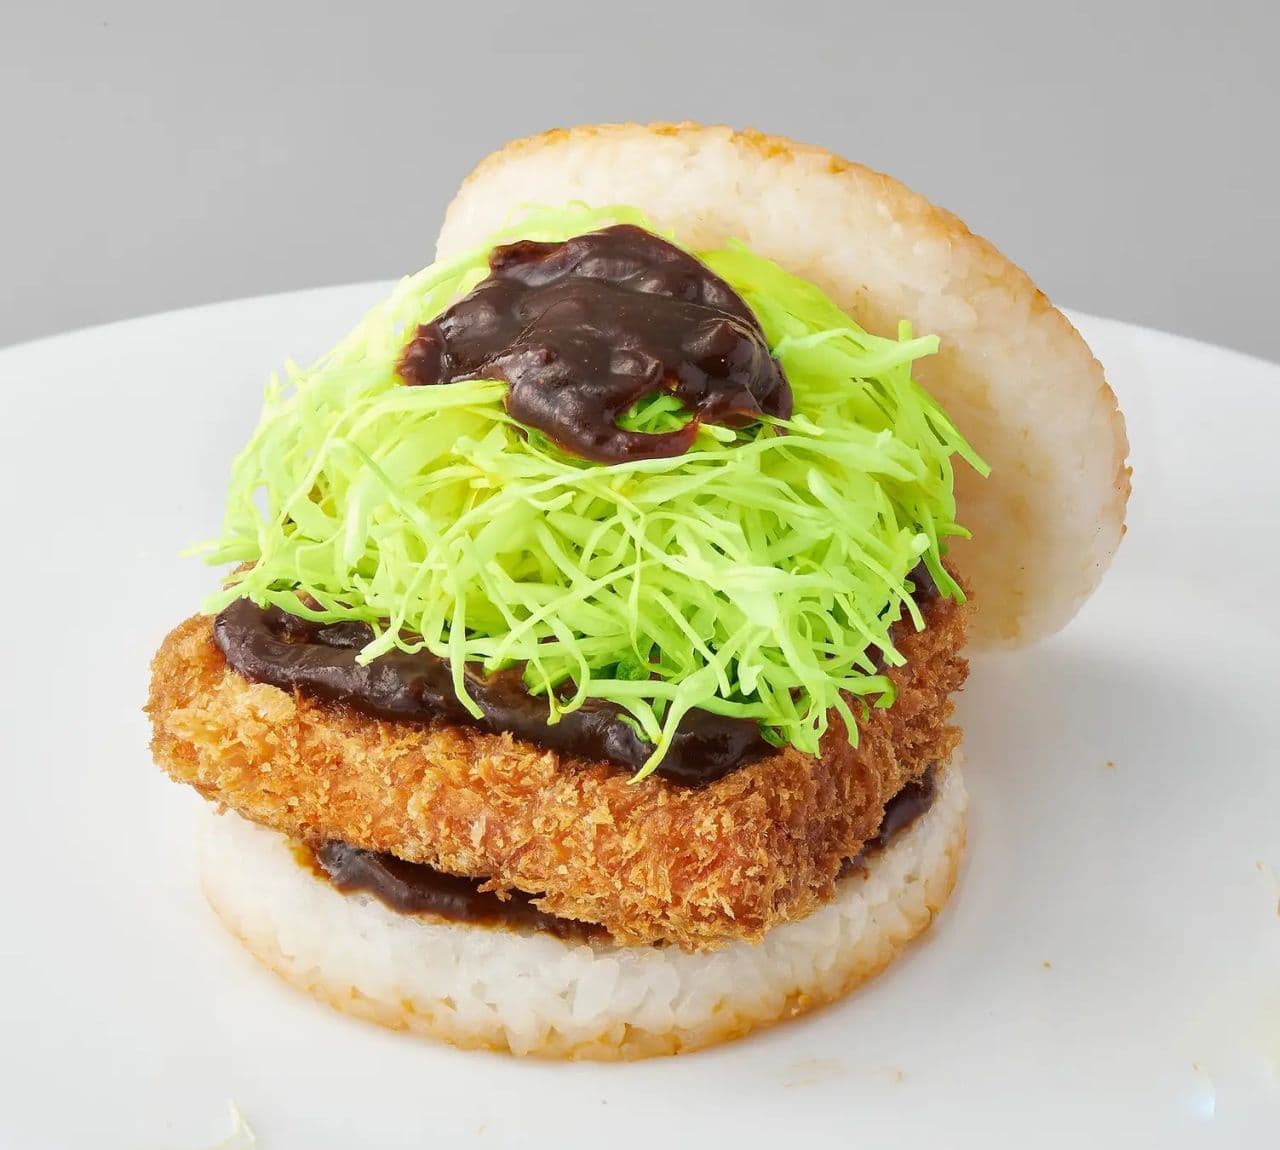 Mos Burger "Miso Katsu Rice Burger with Hatcho Miso".